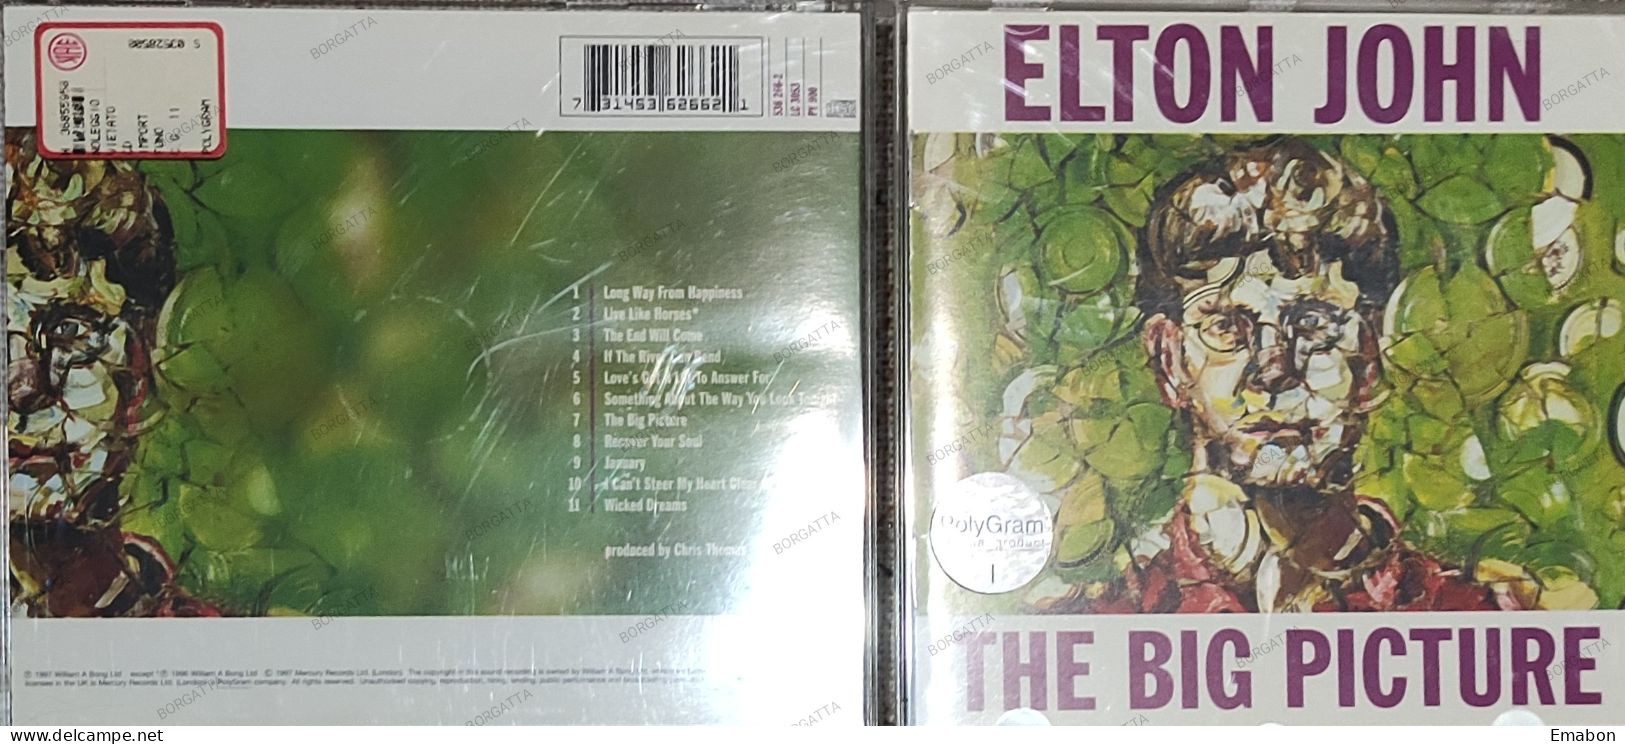 BORGATTA - ROCK - Cd  ELTON JOHN - THE BIG PICTURE - ROCKET  1997 -  USATO In Buono Stato - Rock